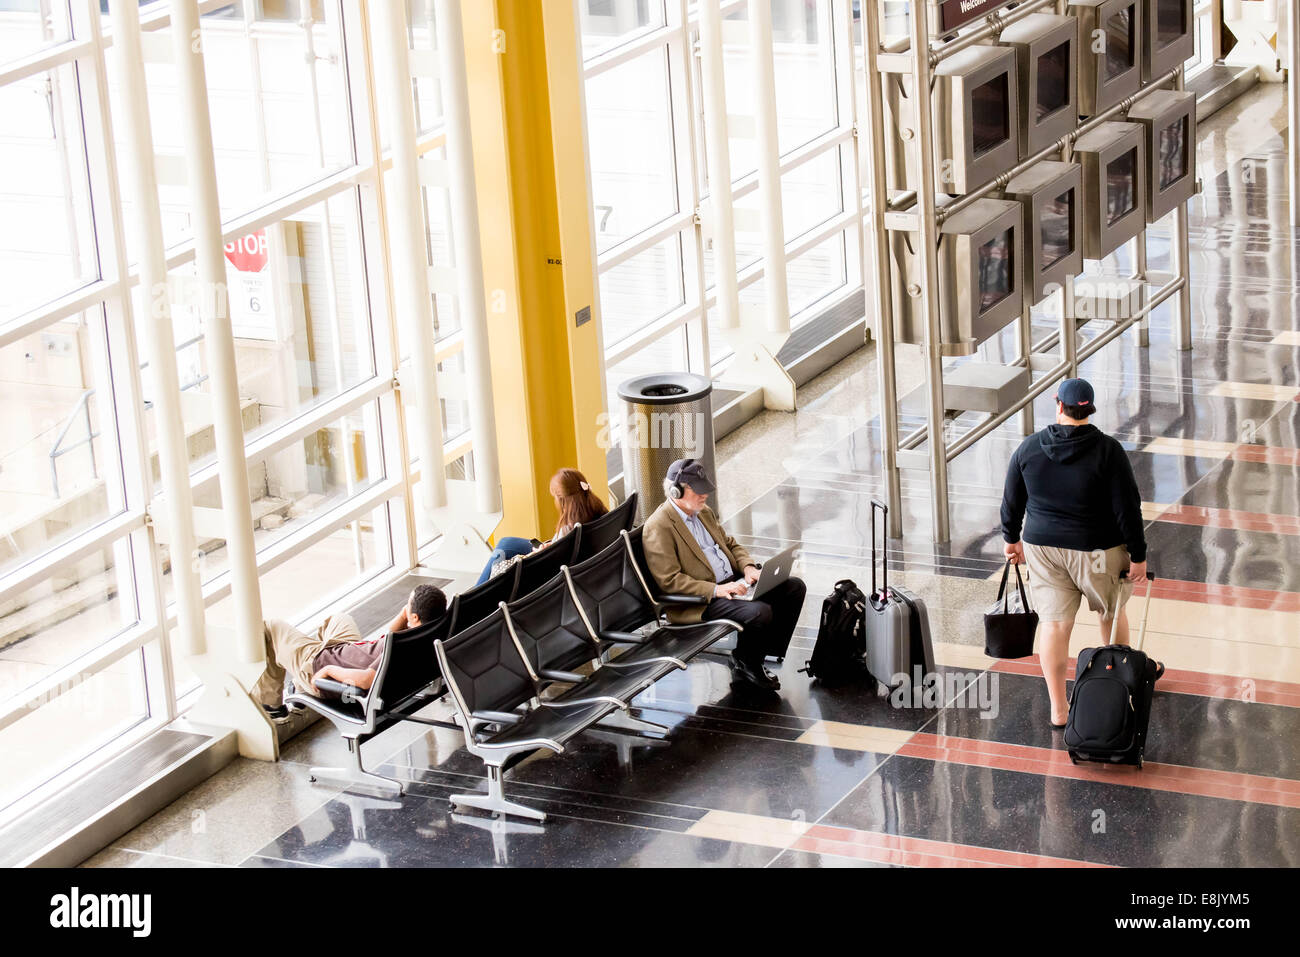 Le DCA, l'Aéroport National Reagan, Washington, DC - Les passagers qui attendent en face d'une fenêtre de l'aéroport intérieur lumineux Banque D'Images